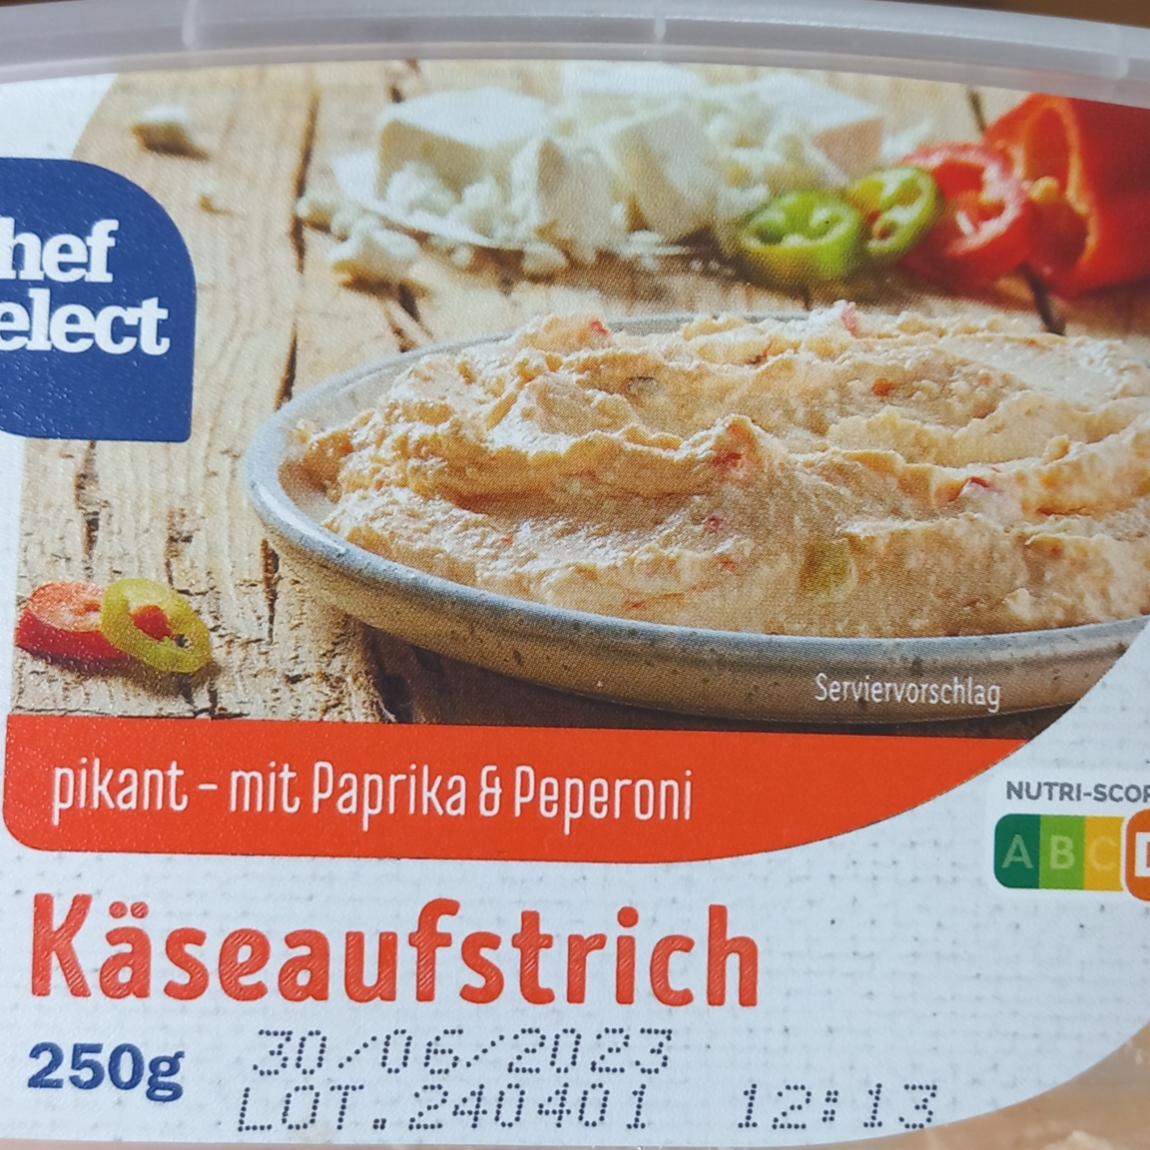 Käseaufstrich pikant Chef mit - nutriční hodnoty kalorie, a & Peperoni Select Paprika kJ